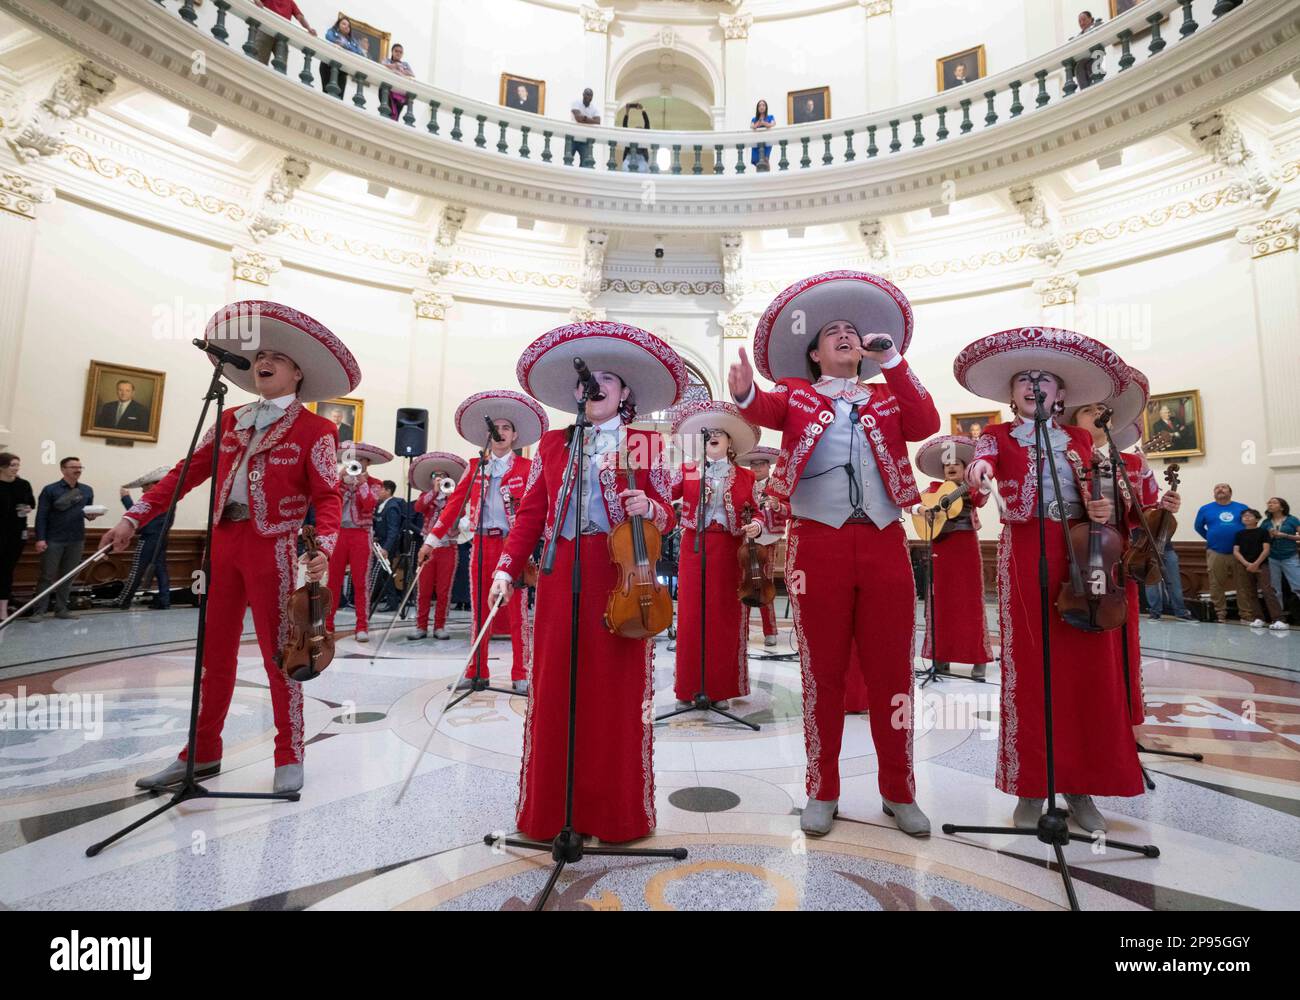 Ein High School-Mariachi aus Starr County, Texas, führt am 7. März 2023 ein nächtliches Konzert in der Texas Capitol Rotunda auf. Mariachi ist eine Art traditioneller mexikanischer Volksmusik, die in der Regel von einer kleinen Gruppe von Musikern in einheimischen Kostümen gespielt wird und bei Wettbewerben in Schulen im Süden von Texas beliebt ist. Stockfoto